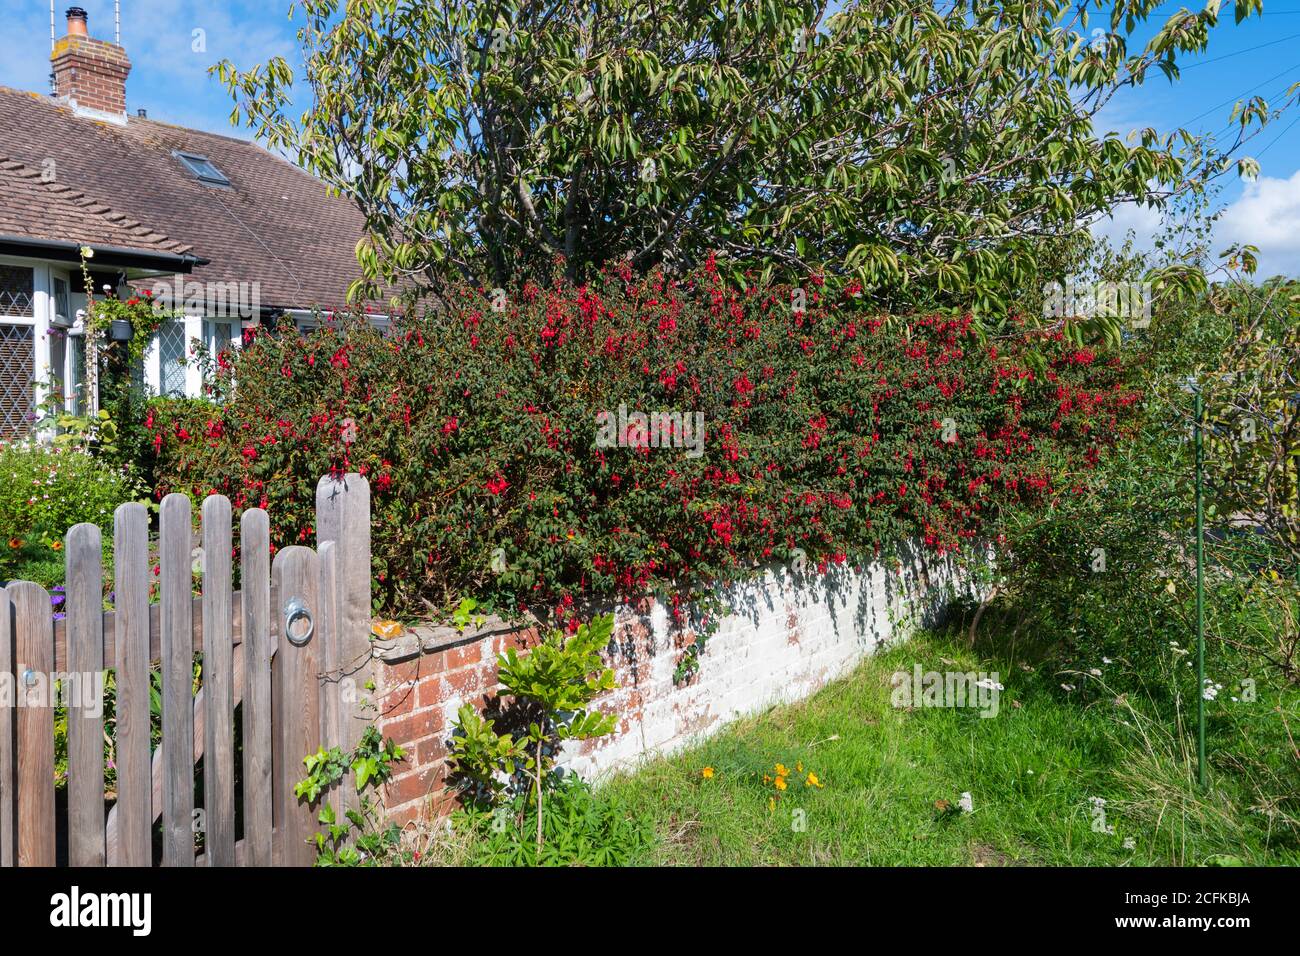 Arbusto di Fuchsia fiorito a fine estate / inizio autunno (settembre) su una recinzione al di fuori di una casa in Inghilterra, Regno Unito. Foto Stock